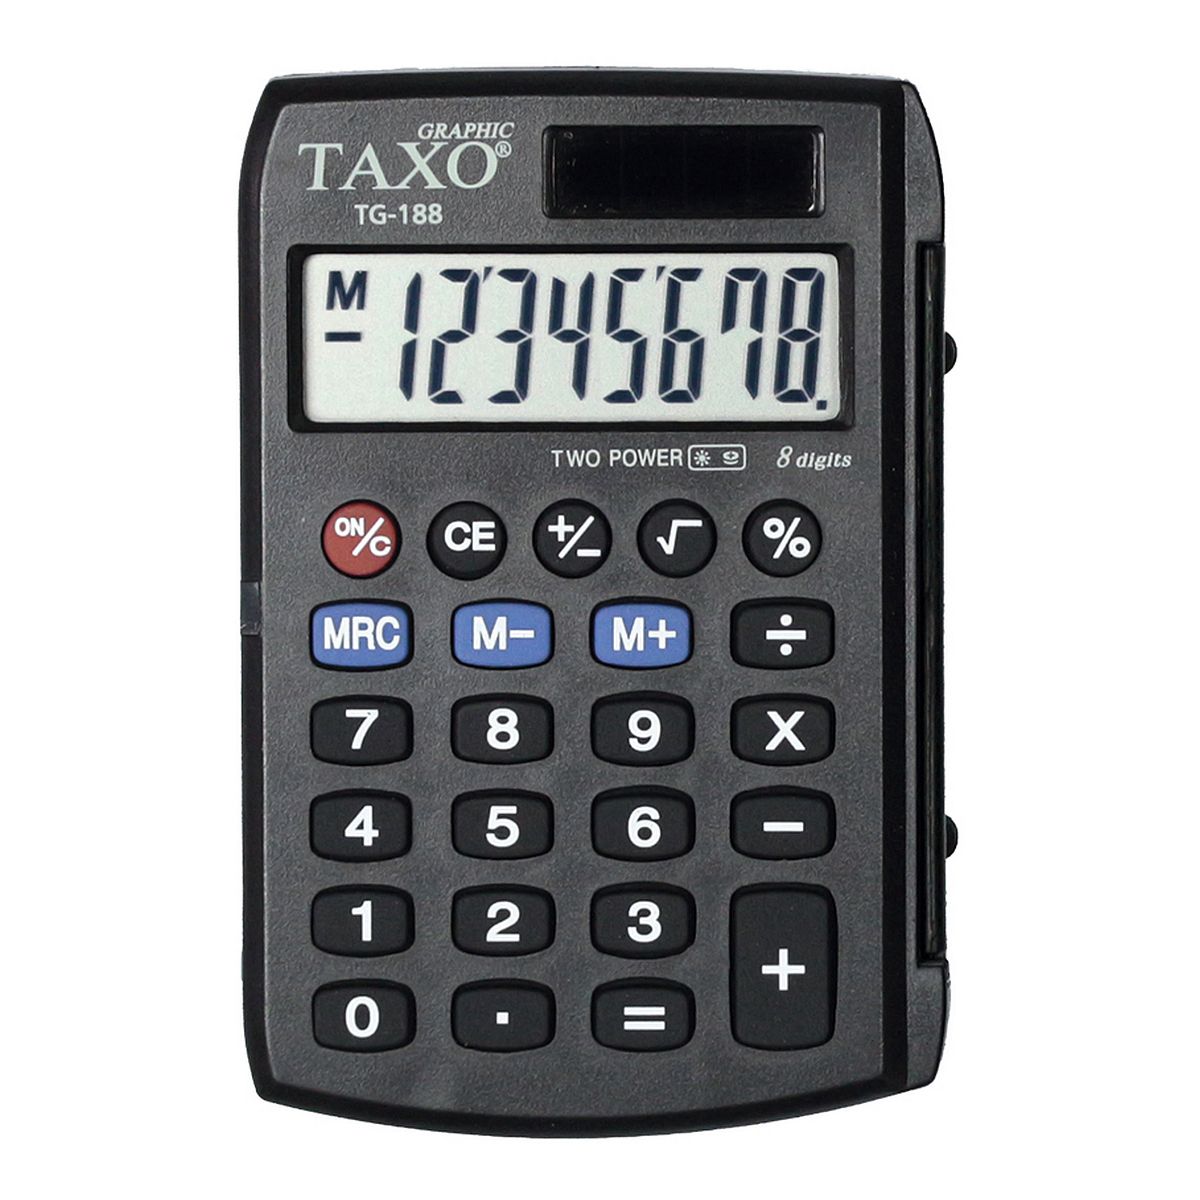 Kalkulator kieszonkowy TG-188 Taxo Graphic 8-pozycyjny